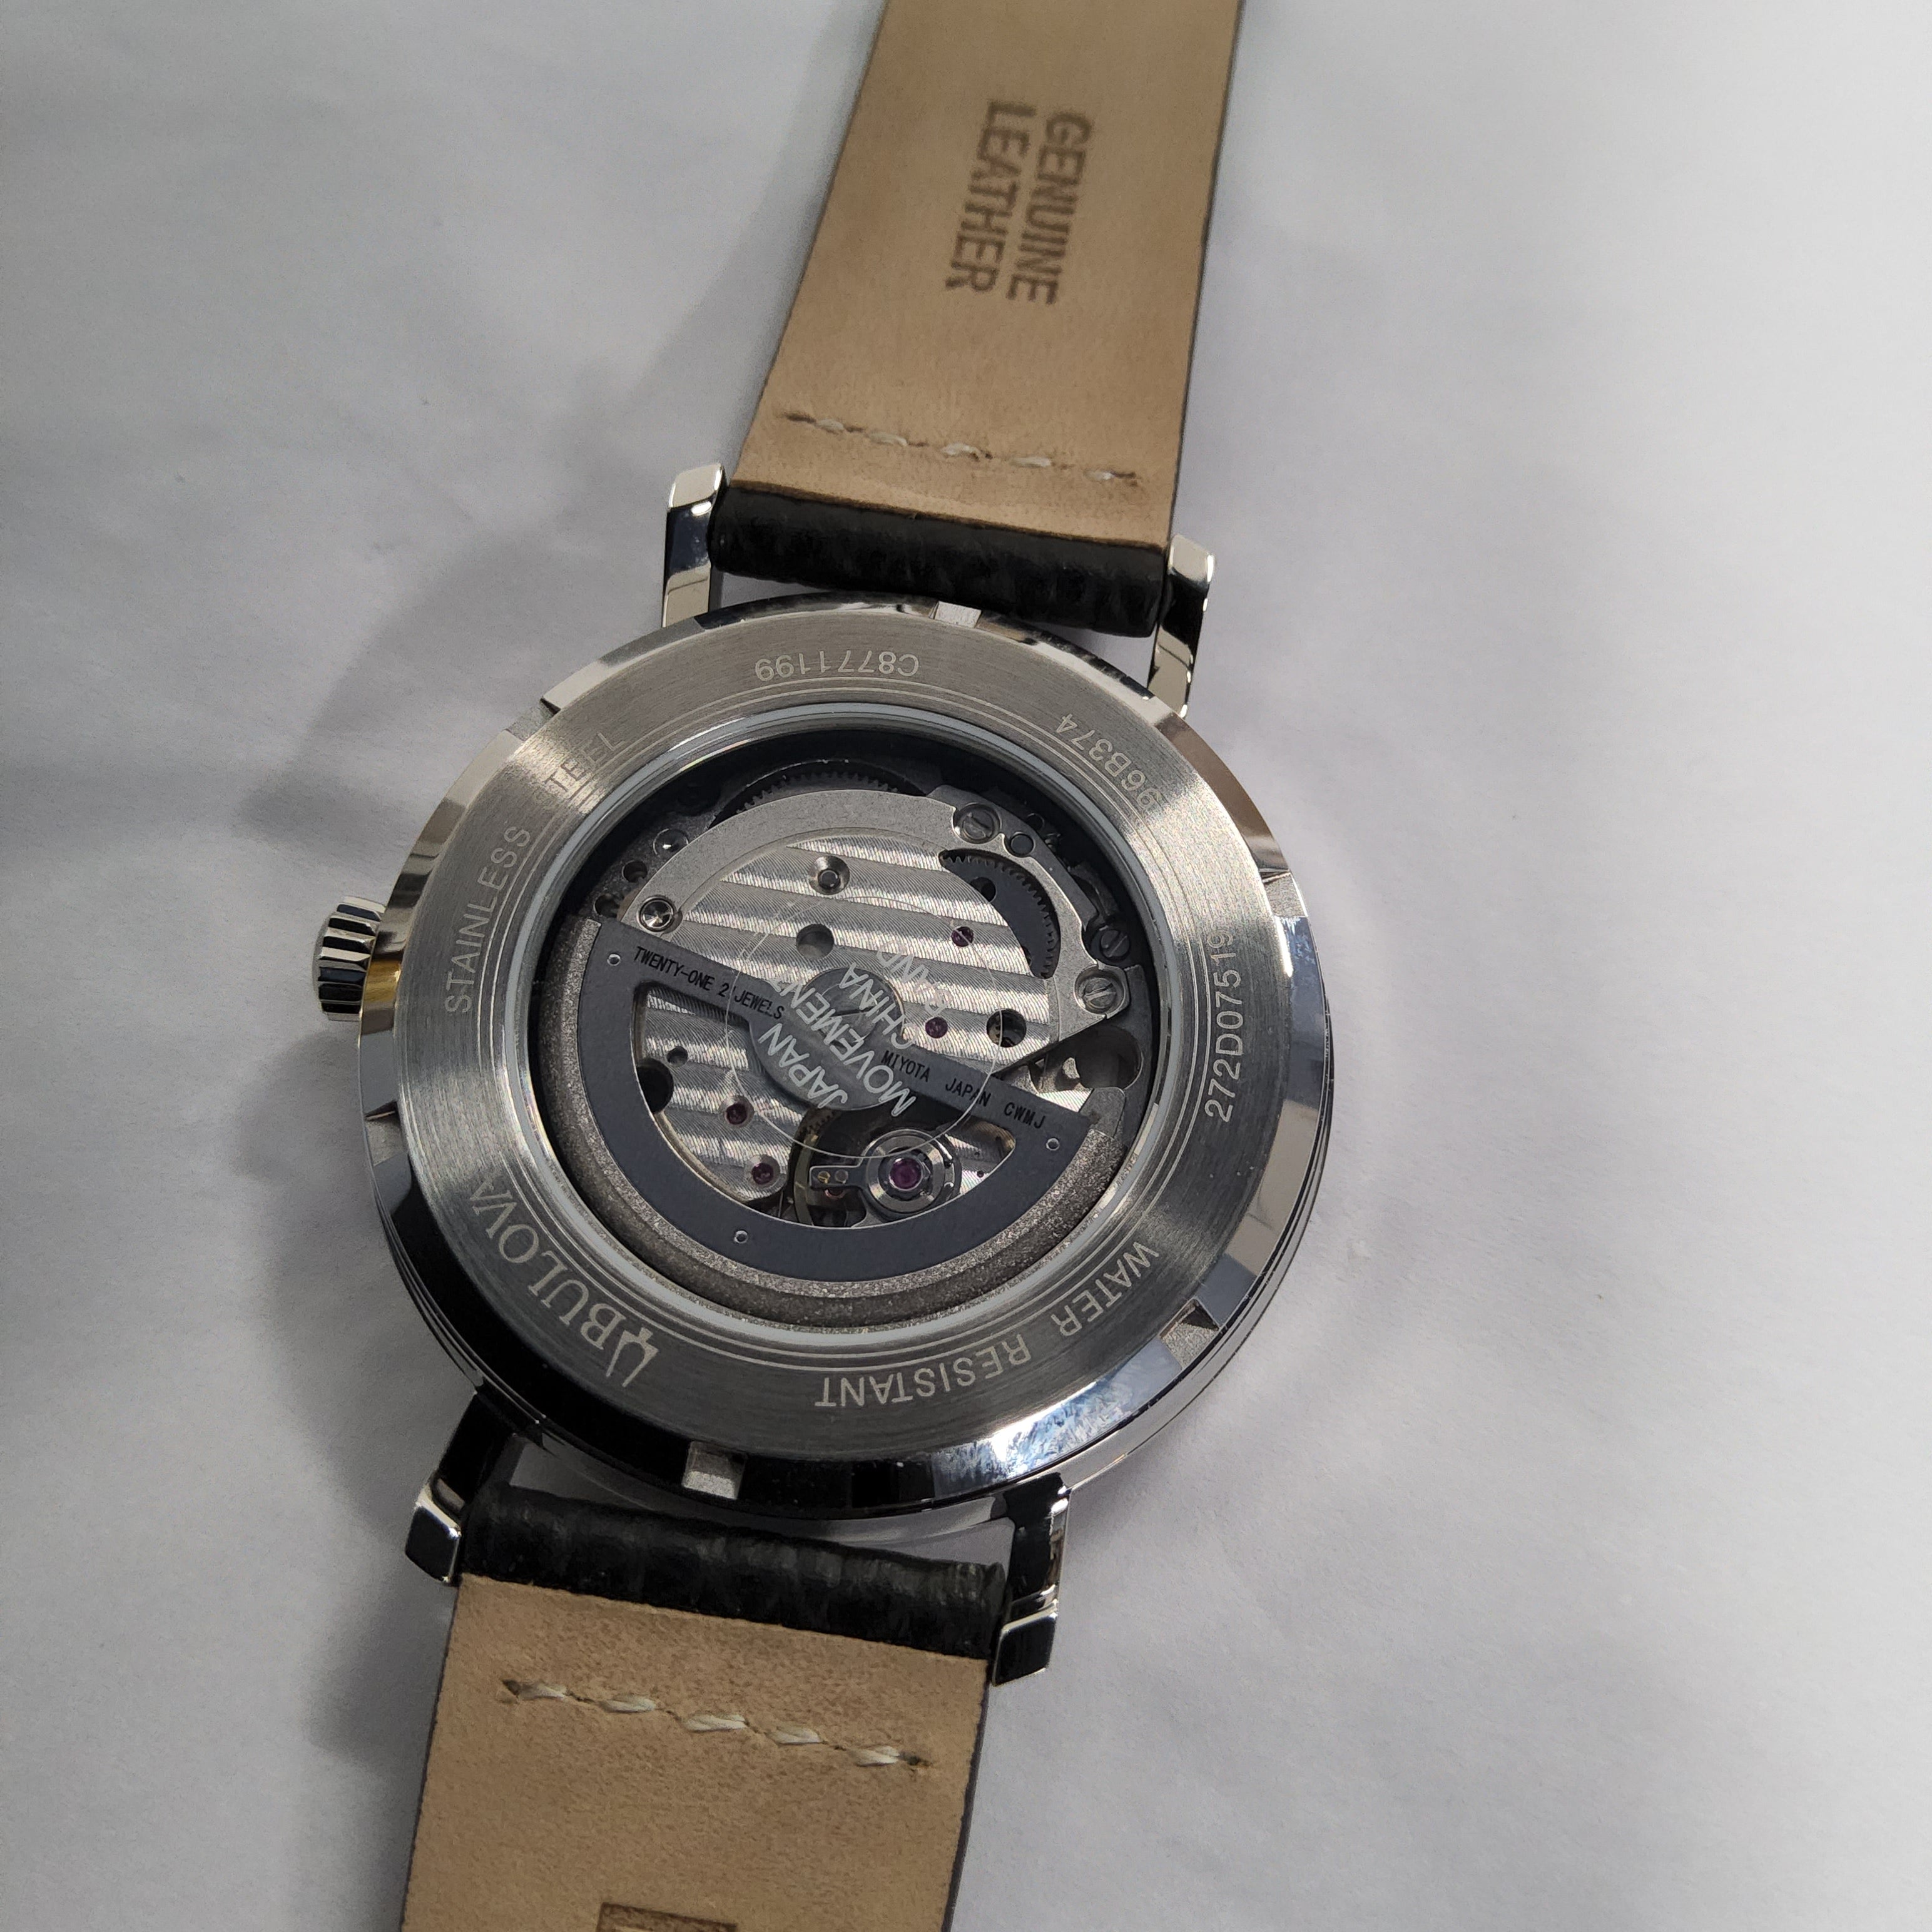 Bulova Automatic Black Leather Watch - 96B374 (Aerojet)